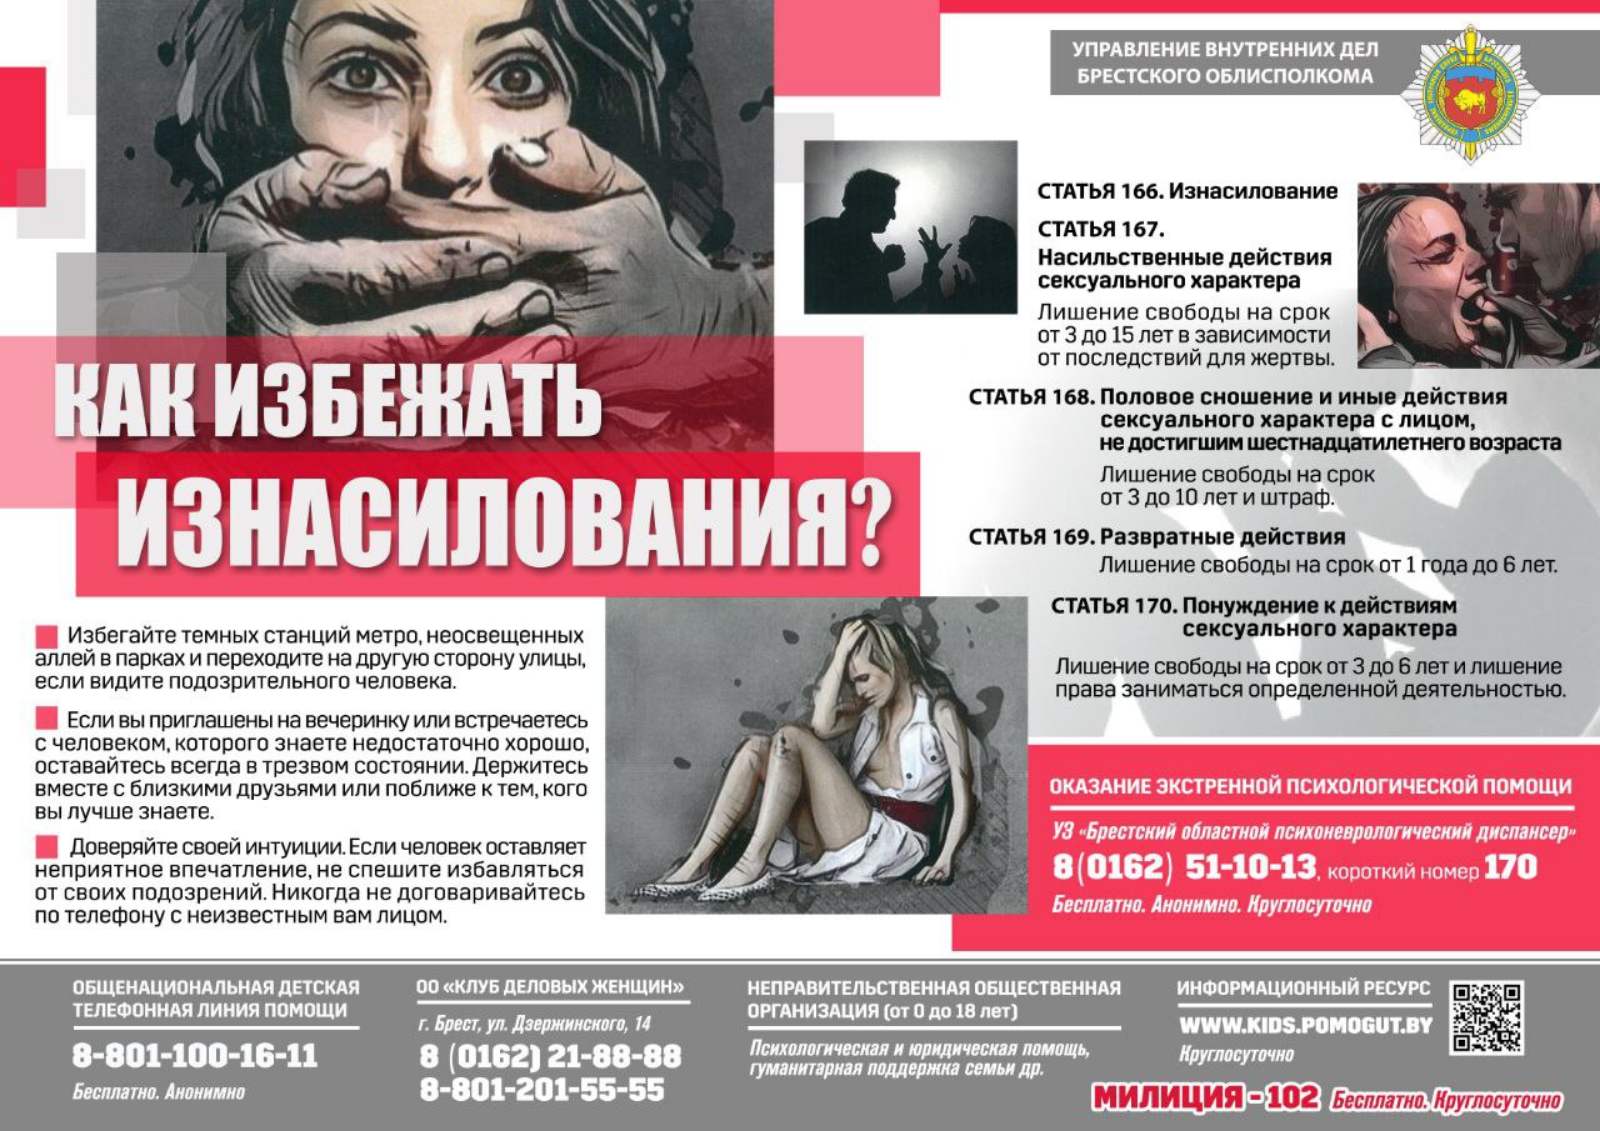 Три места для поиска сексуального партнера в Москве